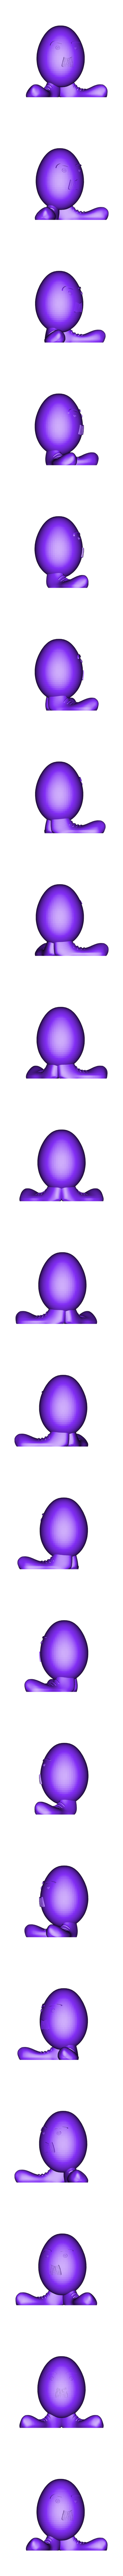 egg_face_shoes.stl Download free STL file Easter Egg Gentleman • 3D printable model, GabrielYun